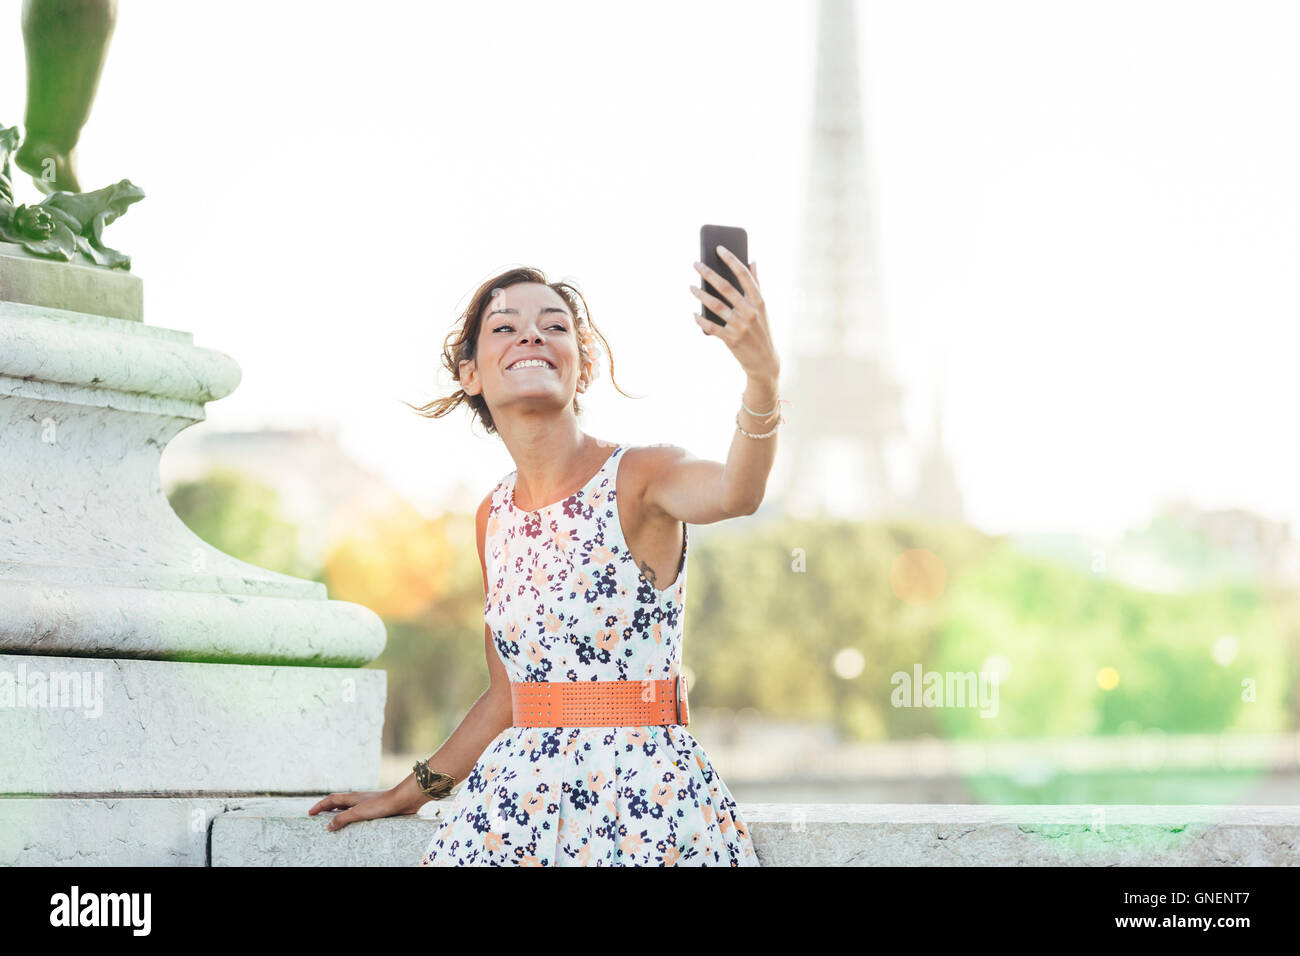 Paris, Frau tut ein Selbstporträt mit Eiffelturm im Hintergrund Stockfoto